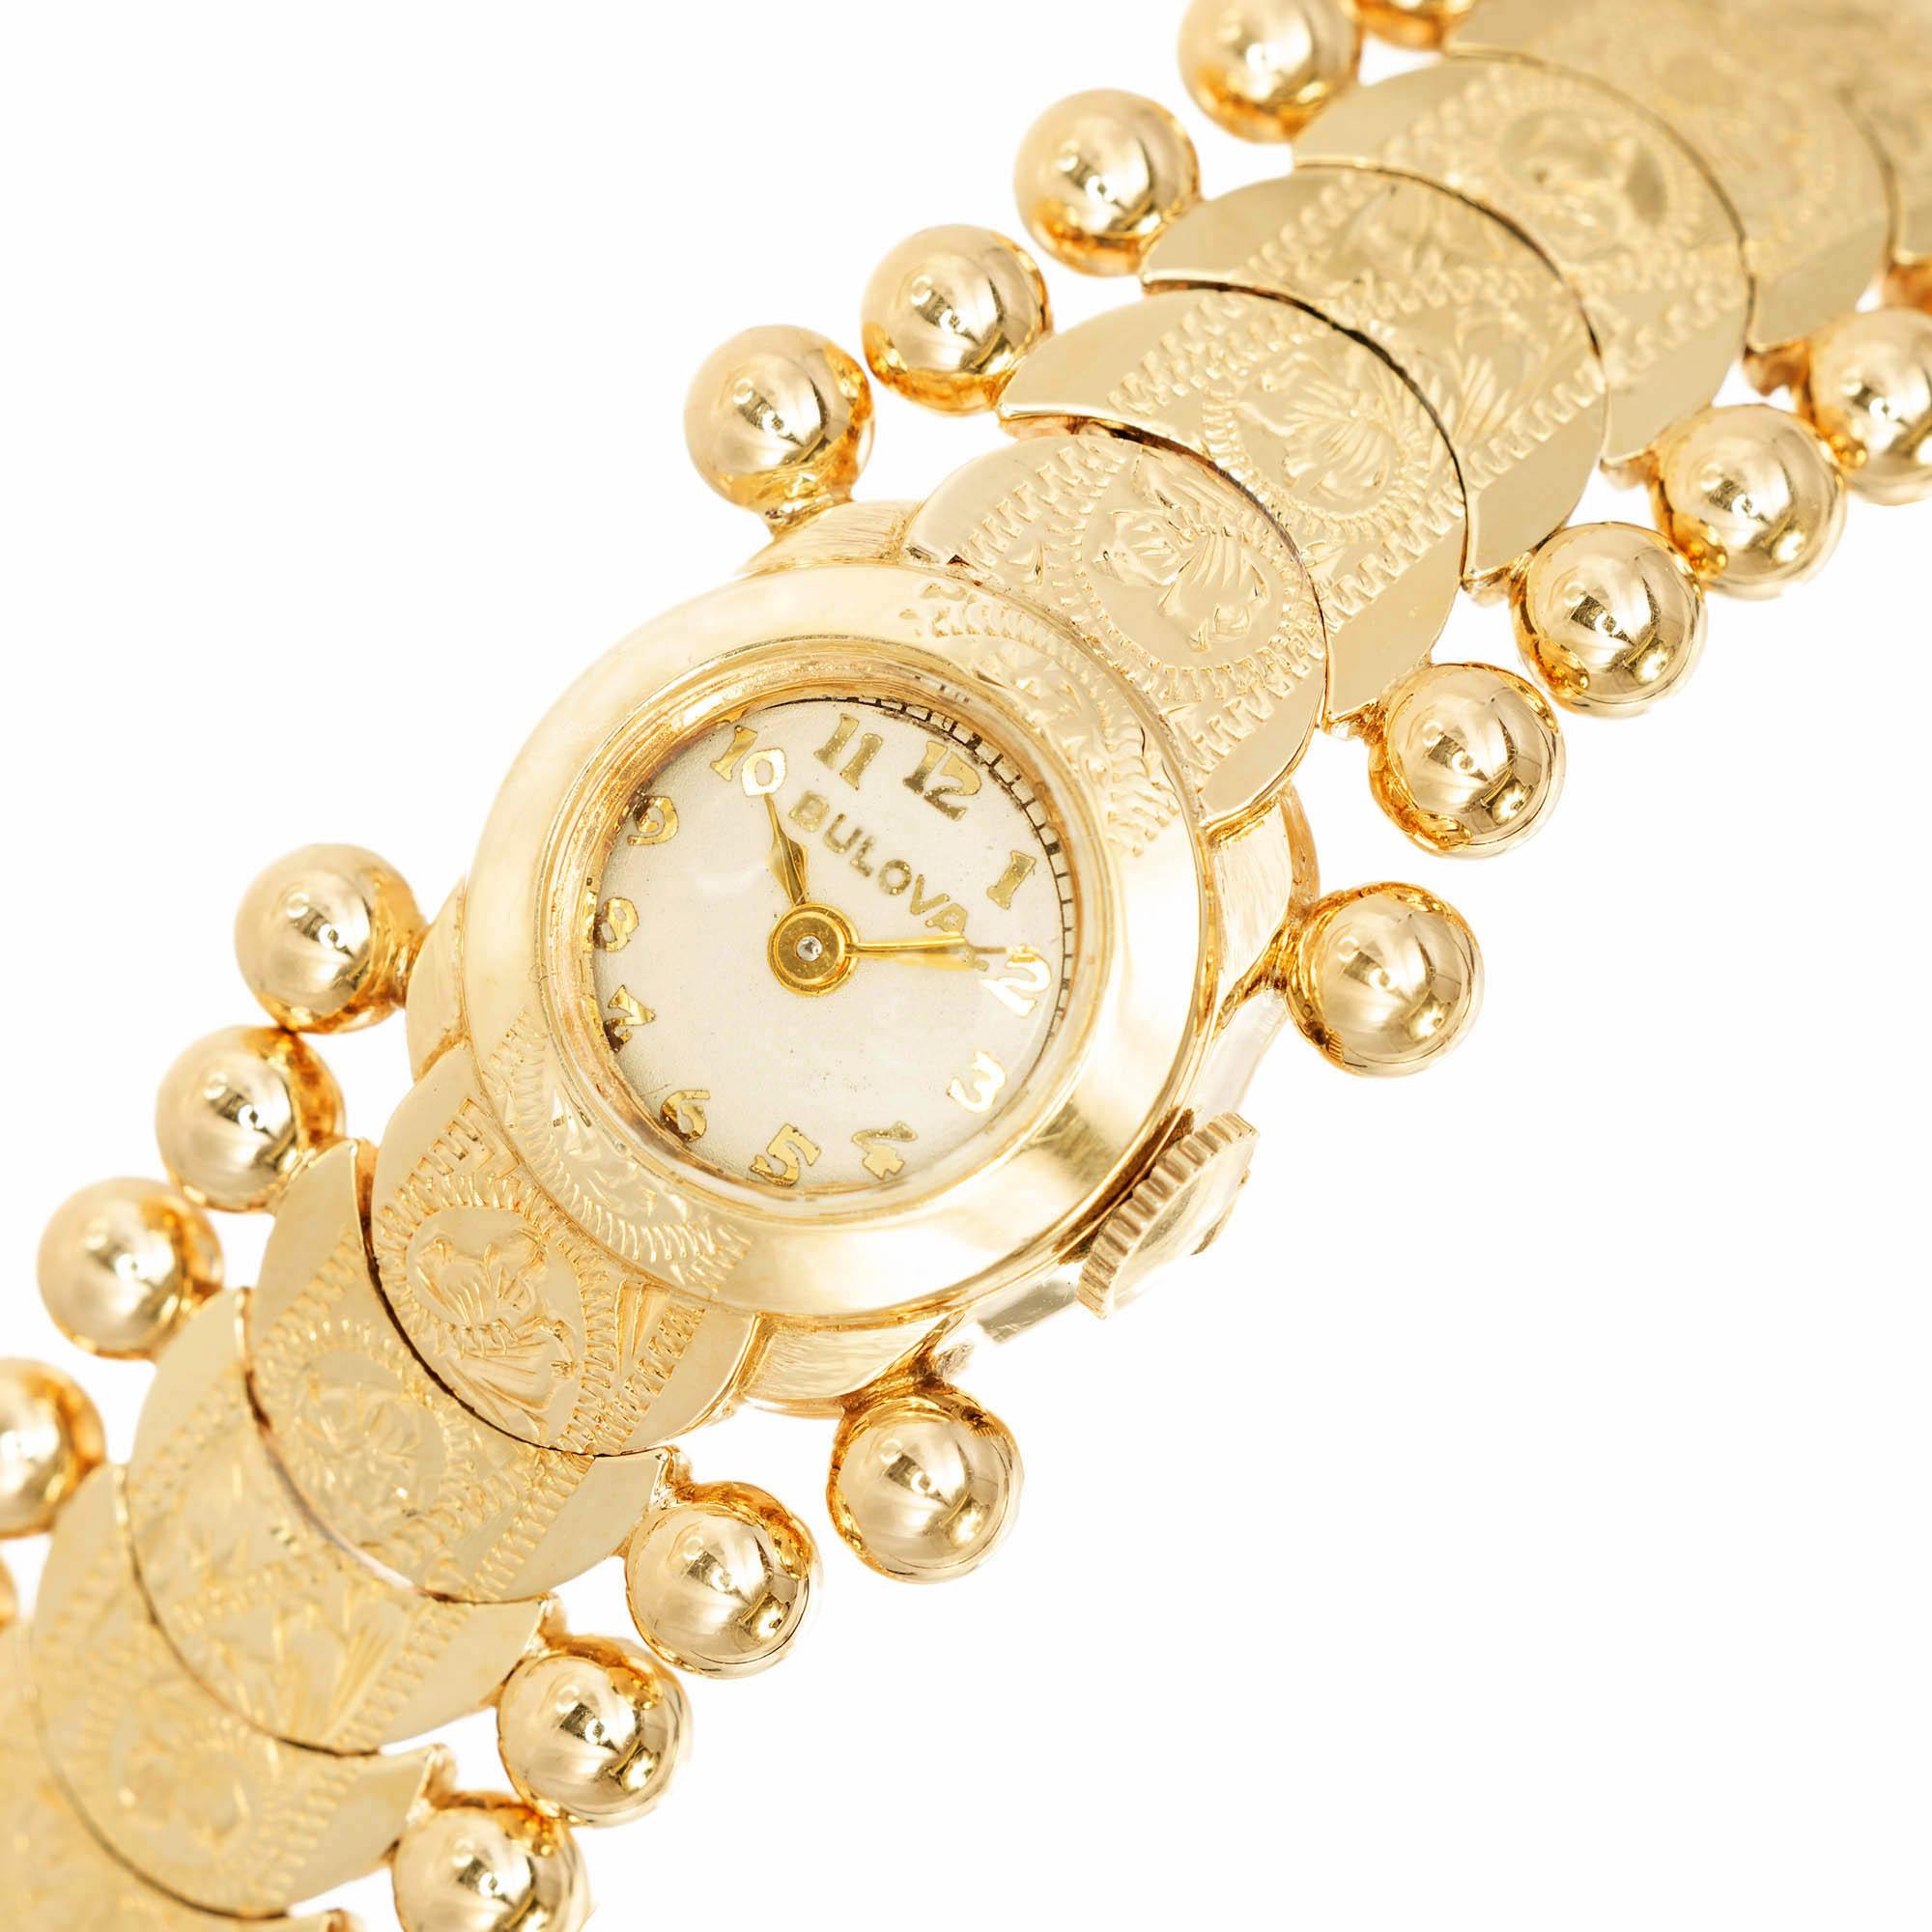 Damen 14k Gelbgold Bulova Armbanduhr. Das Armband besteht aus floral geprägten Gliedern mit einer 4 mm großen Goldkugel auf jeder Seite. 10.5 mm Lünette mit weißem Zifferblatt, goldenen Zahlen und Zifferblättern. Enthält eine Sicherheitskette in